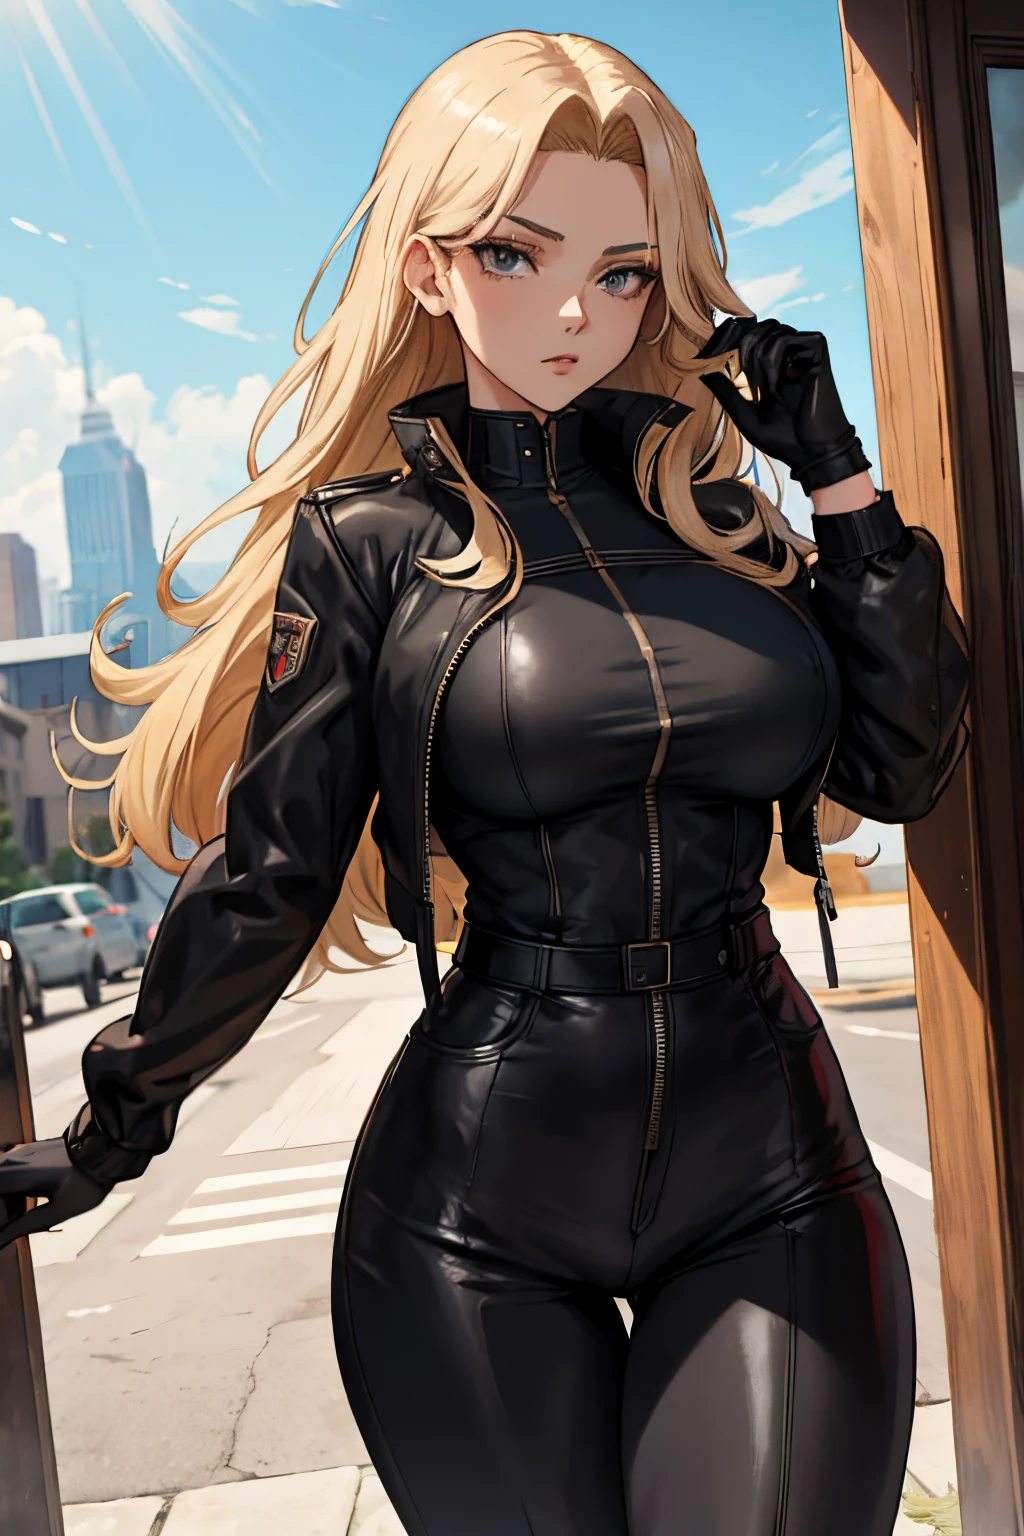 eine schöne Frau, Anime-Stil, langes blondes Haar, Graue Augen, muskulös, trägt eine geschlossene schwarze Jacke, schwarze Lederhandschuhe, Schwarze Hosen